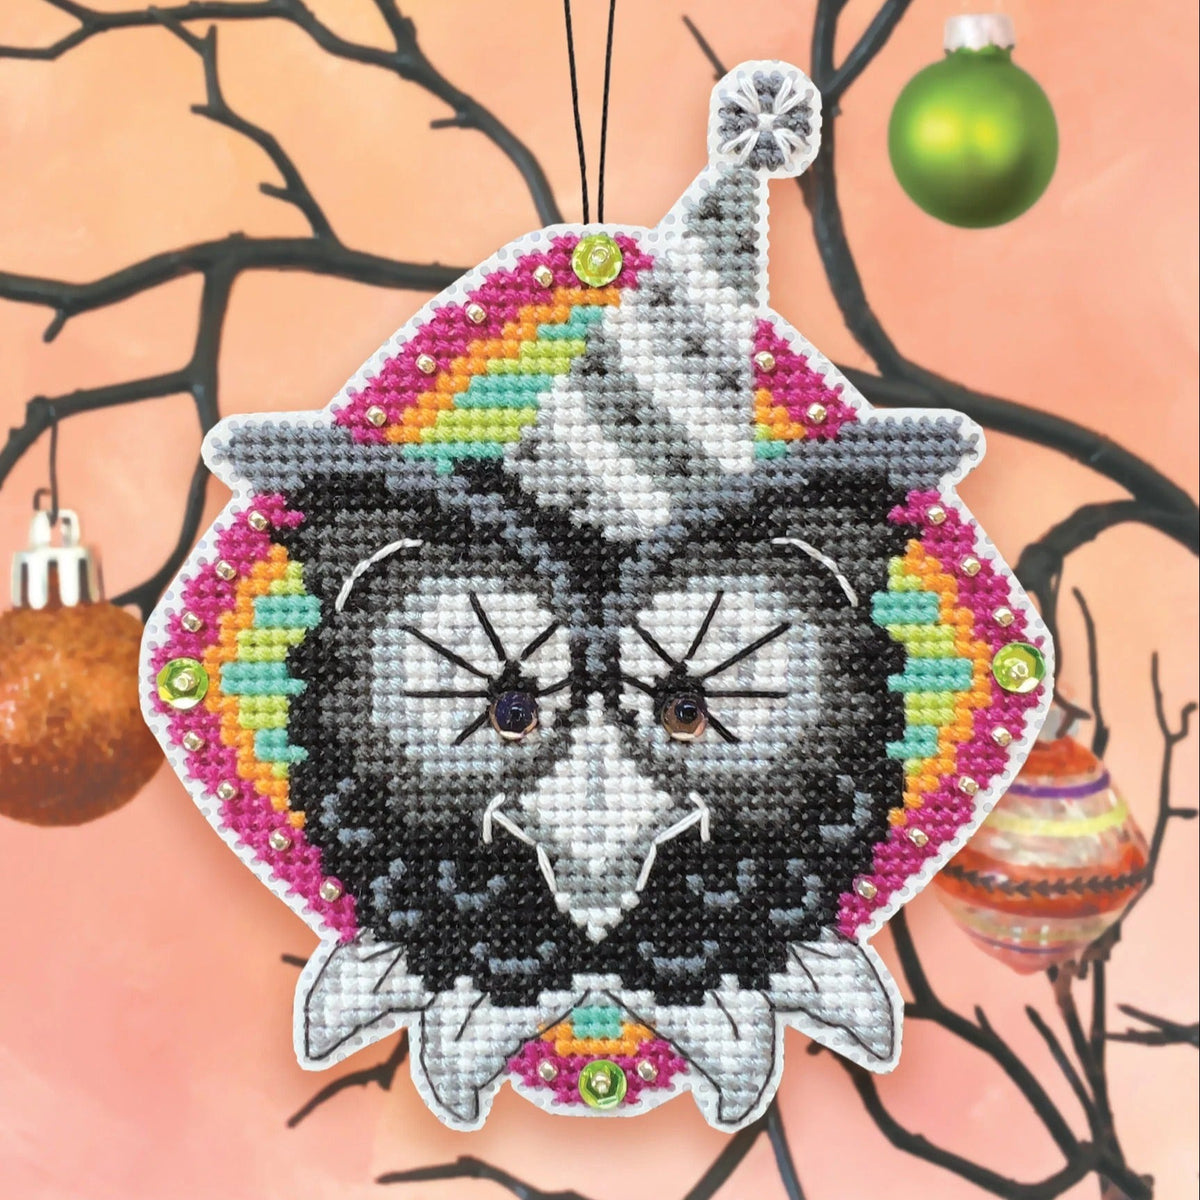 Cross Stitch Halloween Ornament Kit - The Big Wahoo